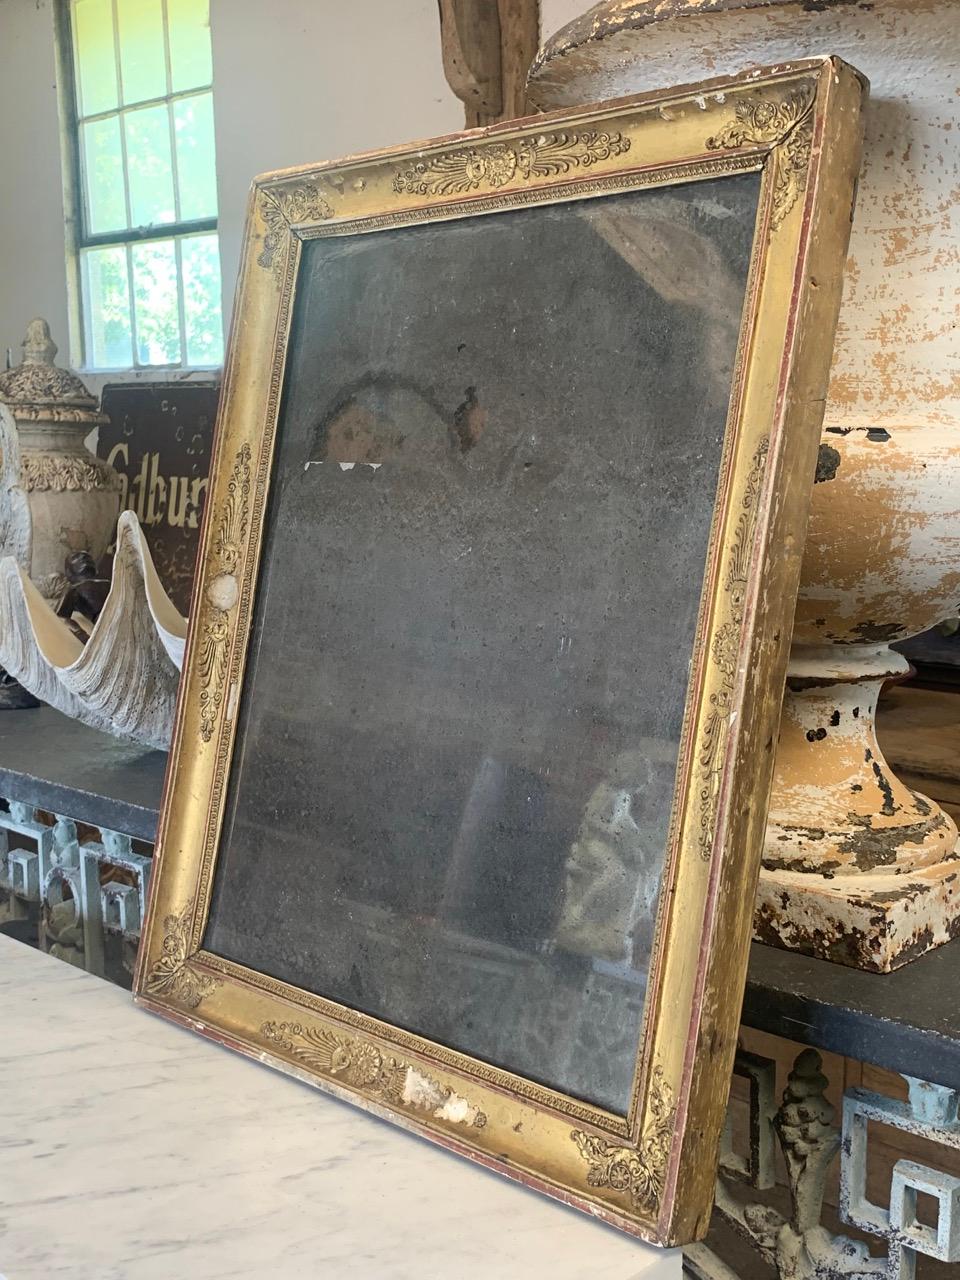 Un joli miroir français du 19ème siècle à cadre doré en bon état de conservation, avec une plaque de verre d'origine roussie. Le cadre en bois et gesso présente une belle usure de la dorure, ce qui lui confère un bel aspect décoratif. Il possède ses